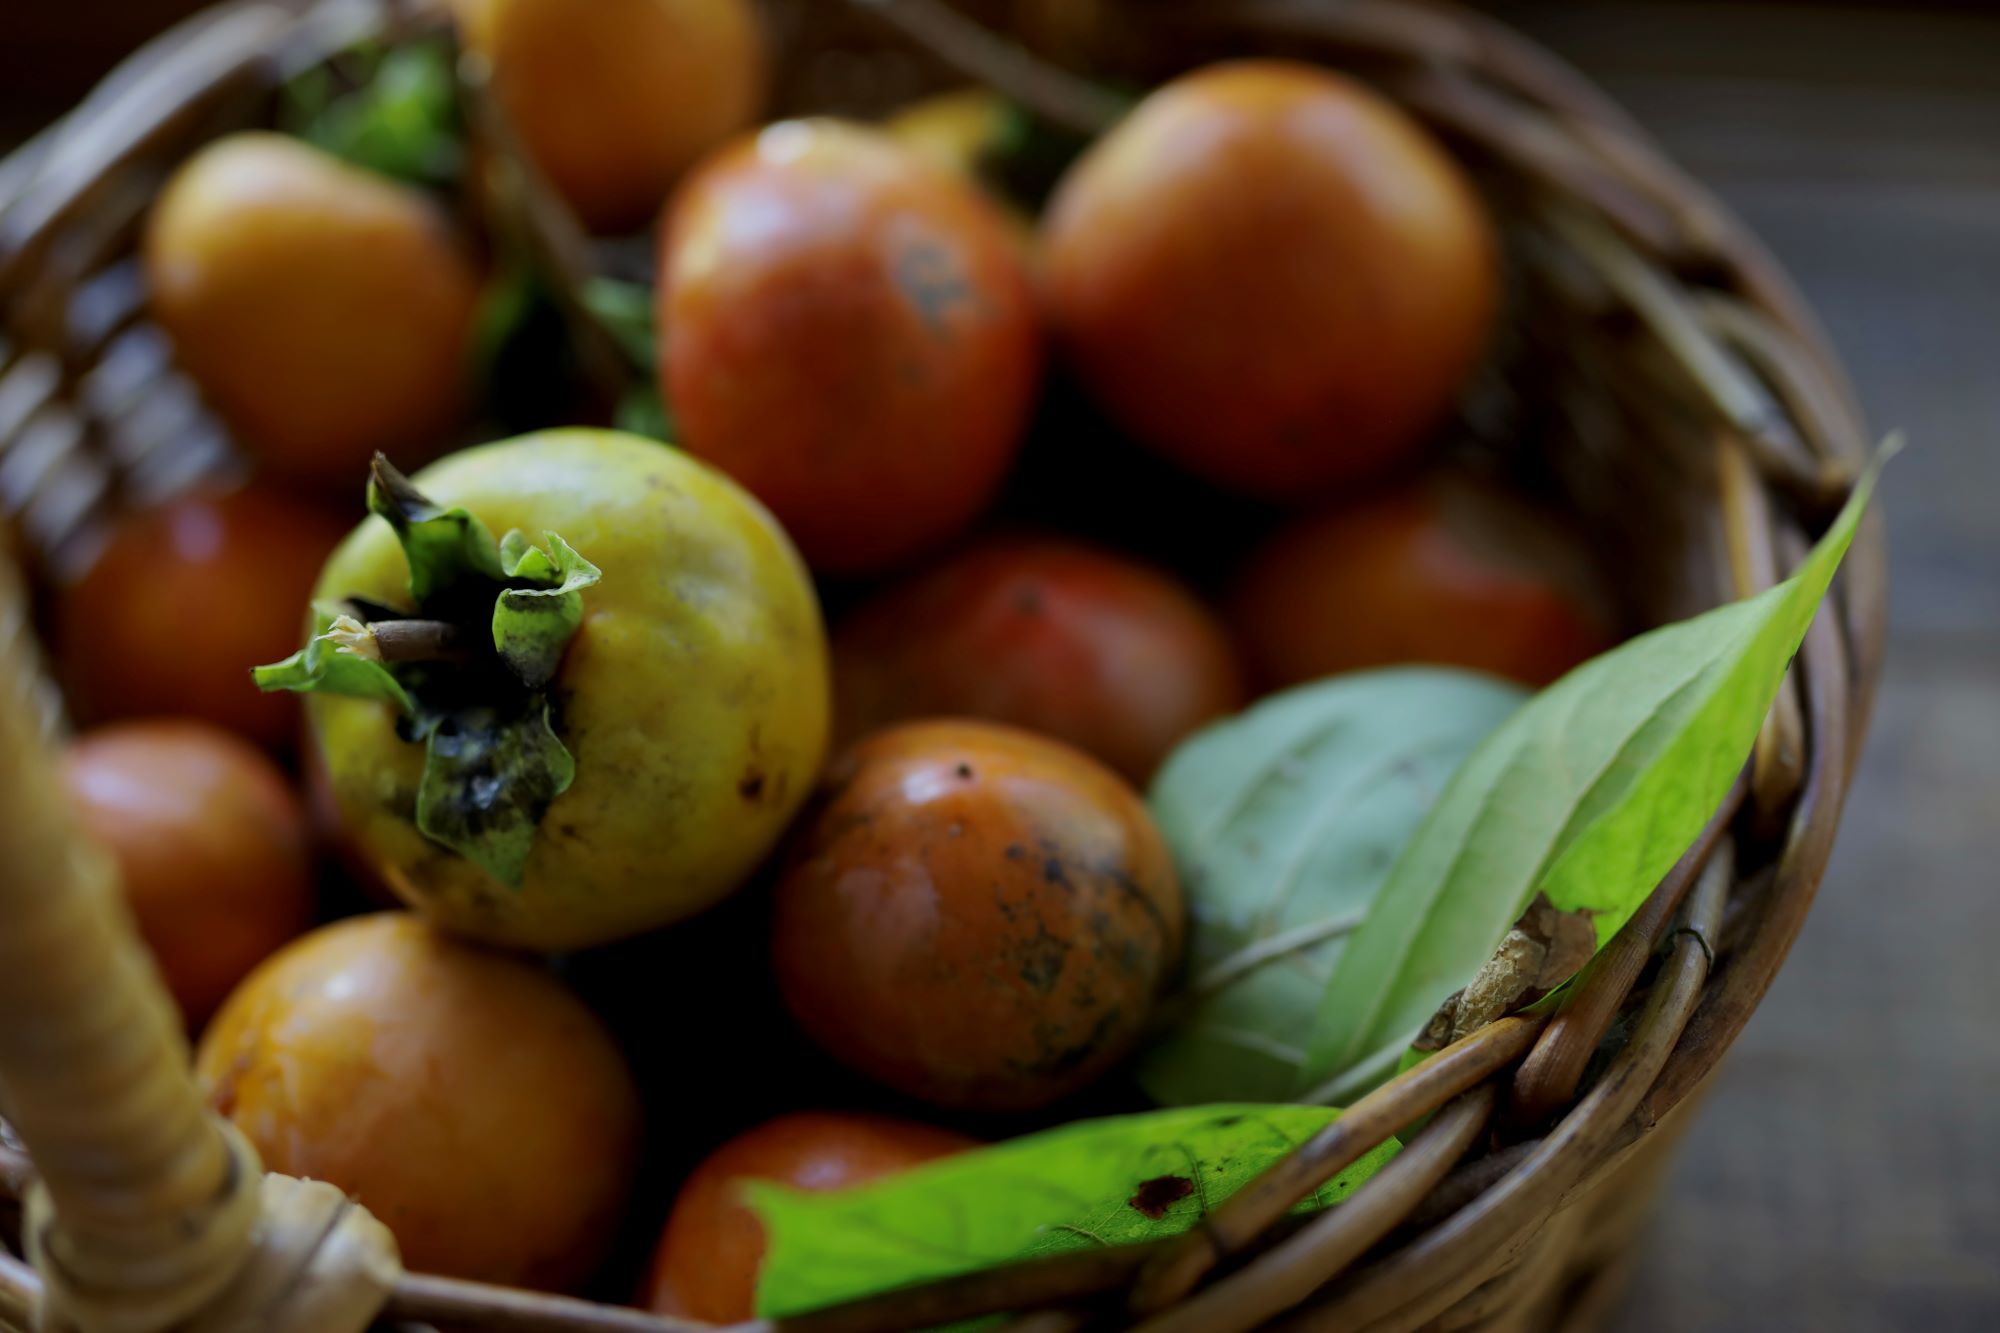 細川家の庭になる、とびきり甘くて美味しい柿。